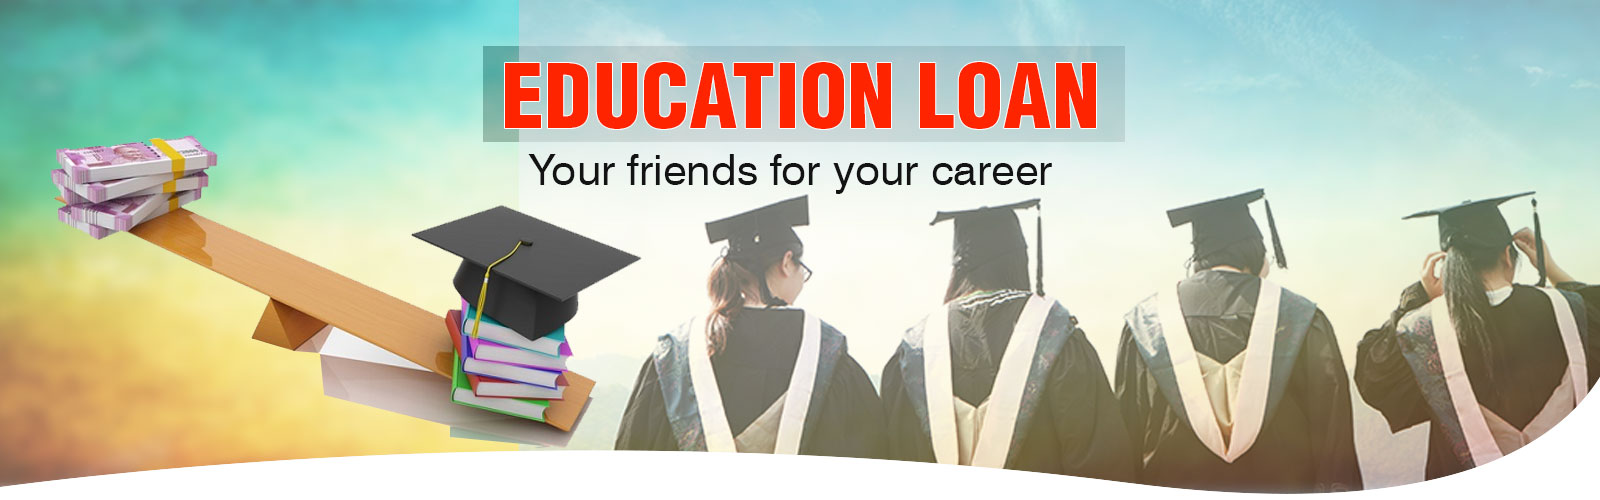 Education-loan